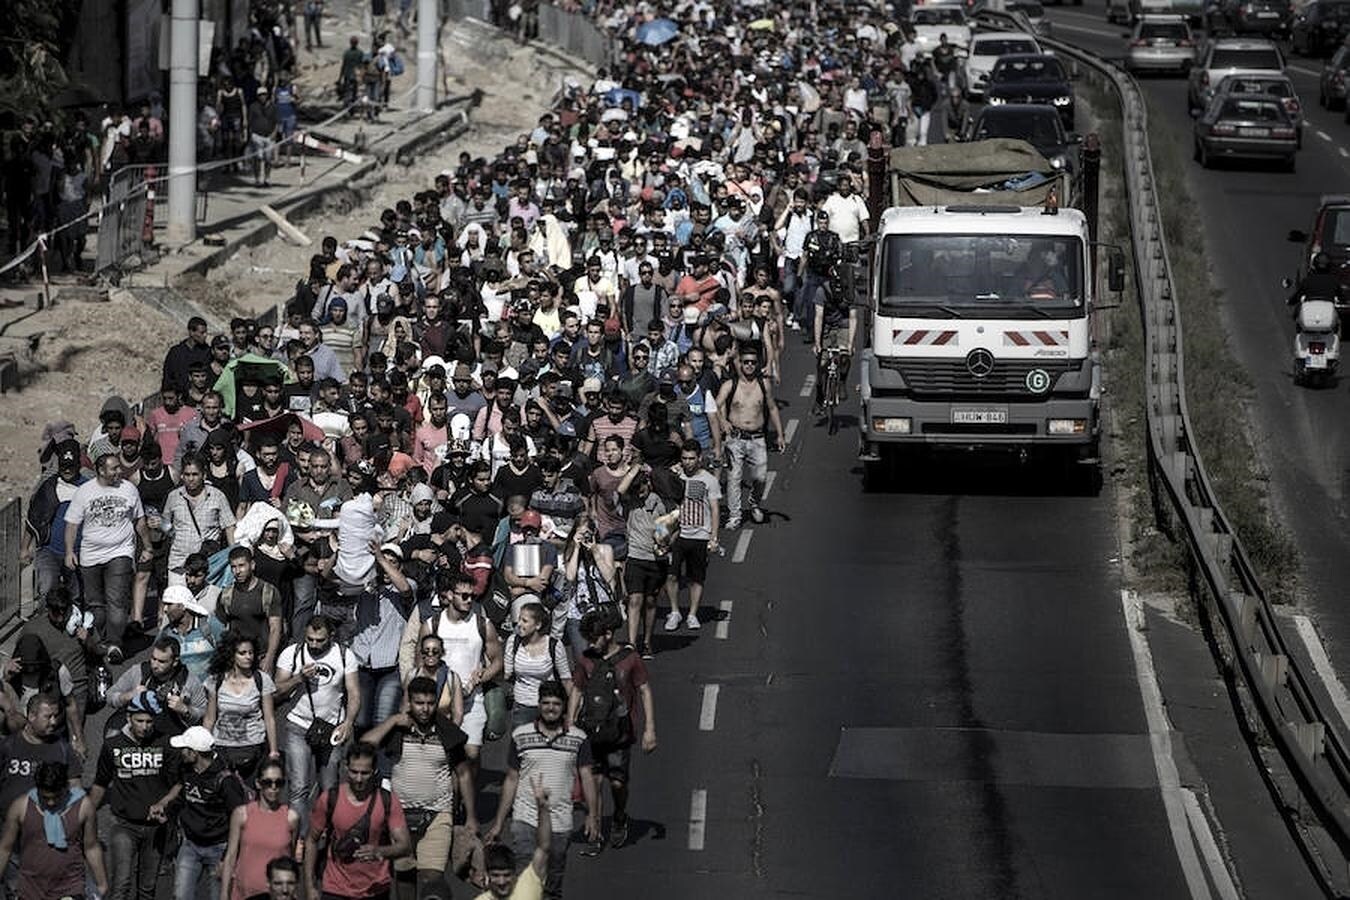 Tras varios días atrapados en la estación de Keleti, miles de personas emprendieron el camino a pie hacia Alemania, mientras el gobierno húngaro se negaba a reanudar el tráfico ferroviario hacia el centro de Europa, a pesar de que Merkel se ofrecía a acoger a los refugiados en su territorio.